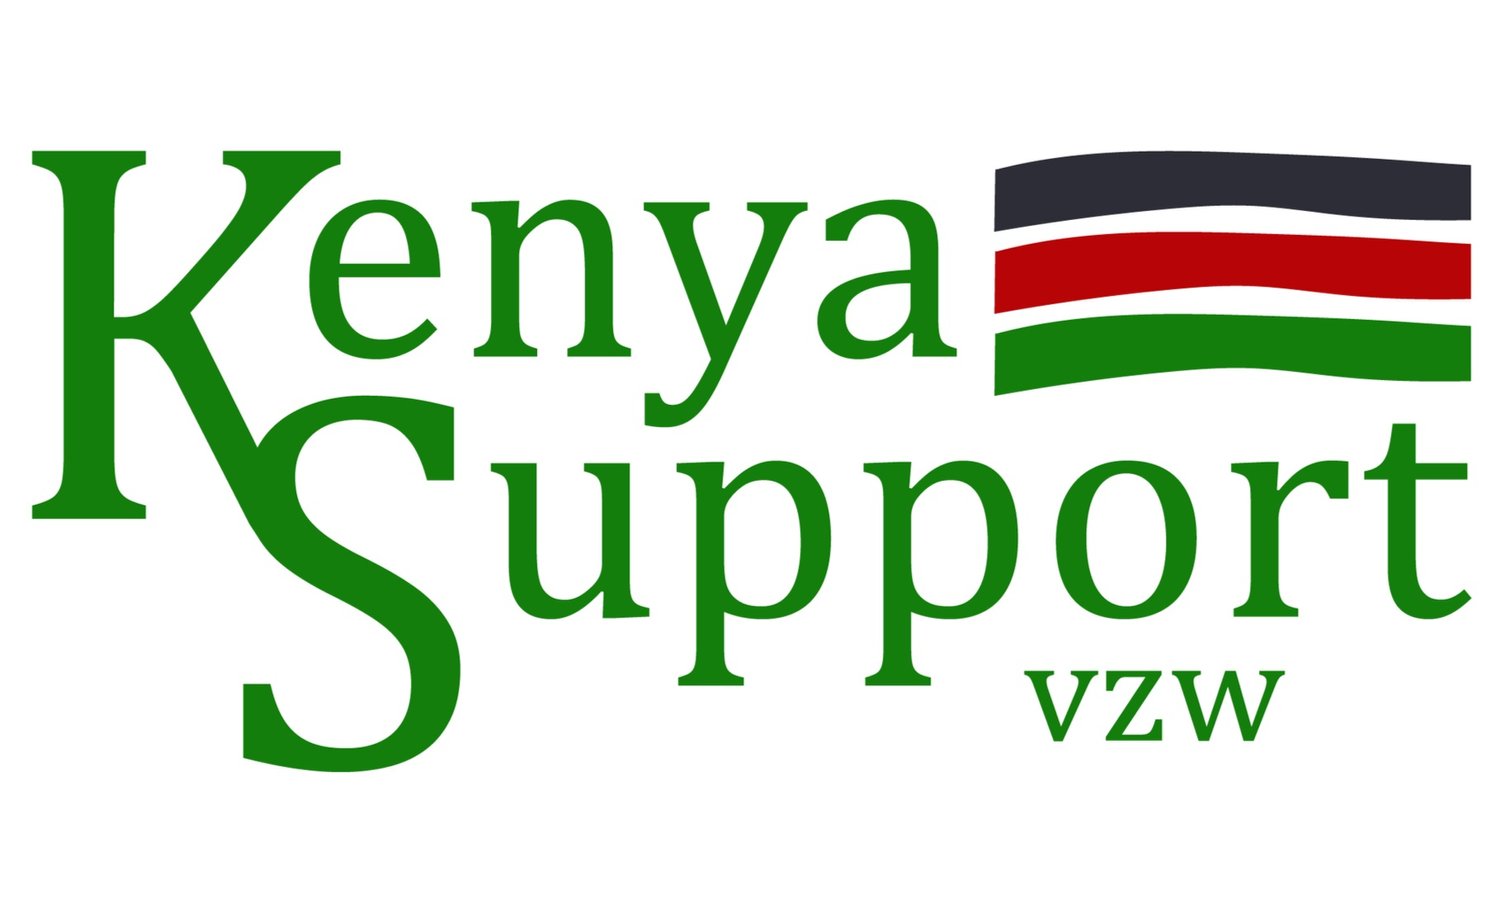 Kenya Support